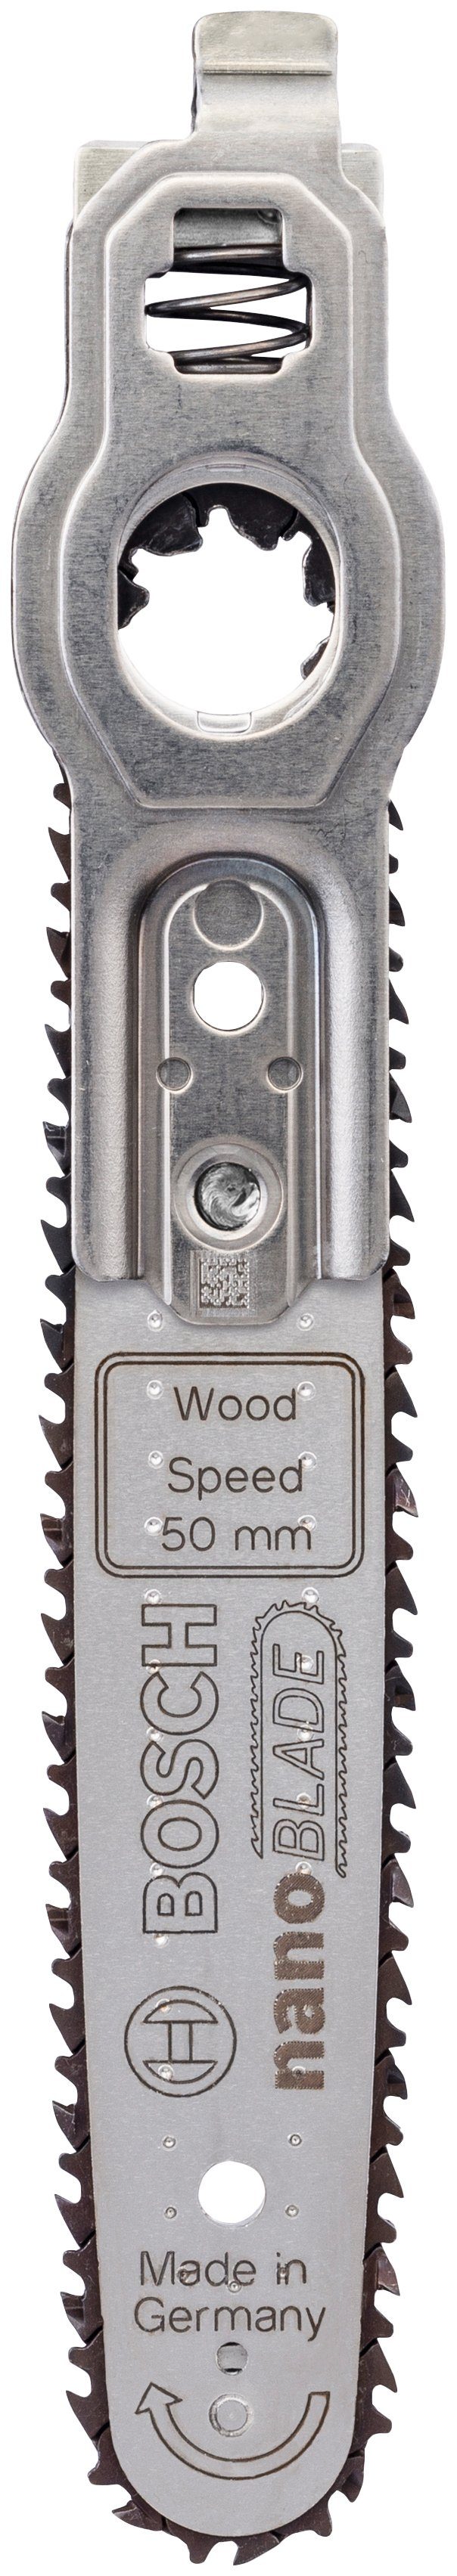 Bosch Home & Garden Sägeblatt nanoBLADE Wood Speed 50,  Mikro-Kettensägeblatt nanoBLADE, 50 mm